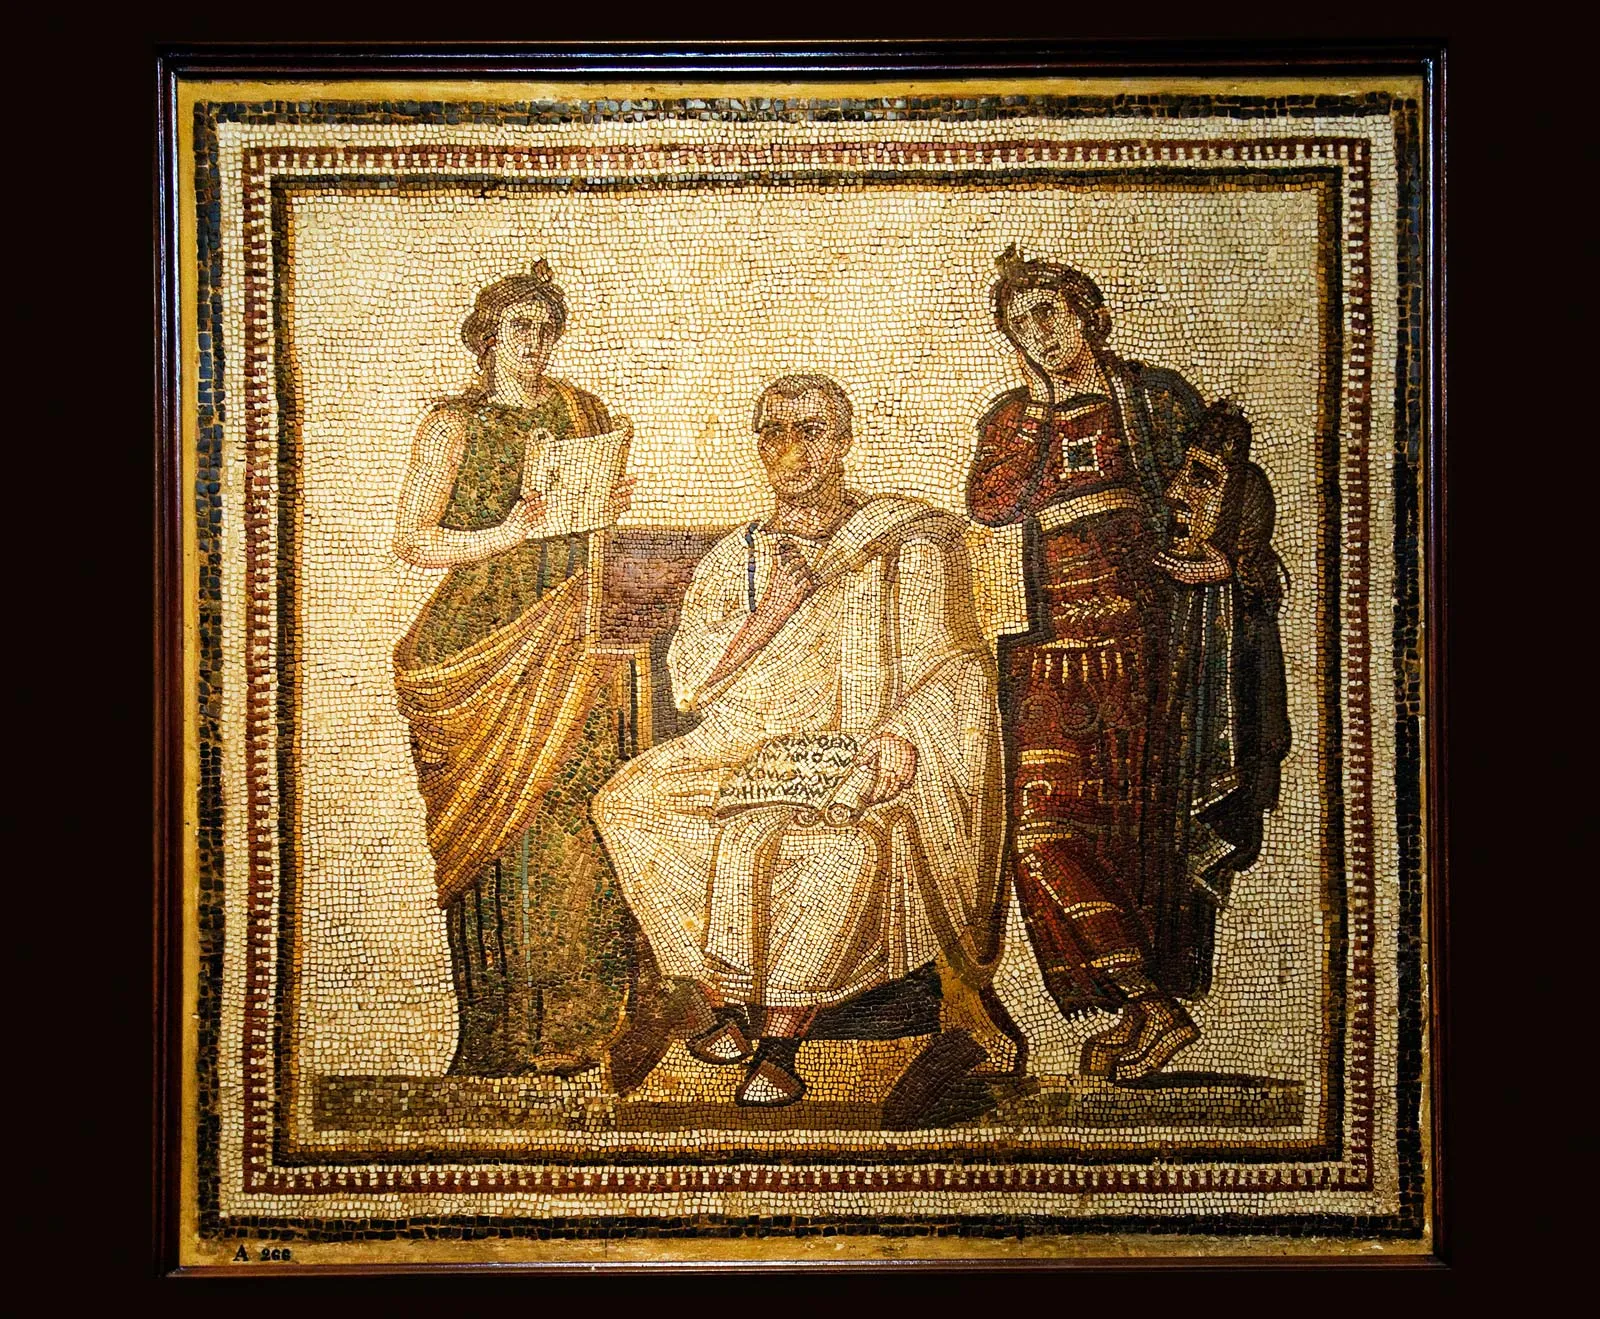 Mosaic of Vergil